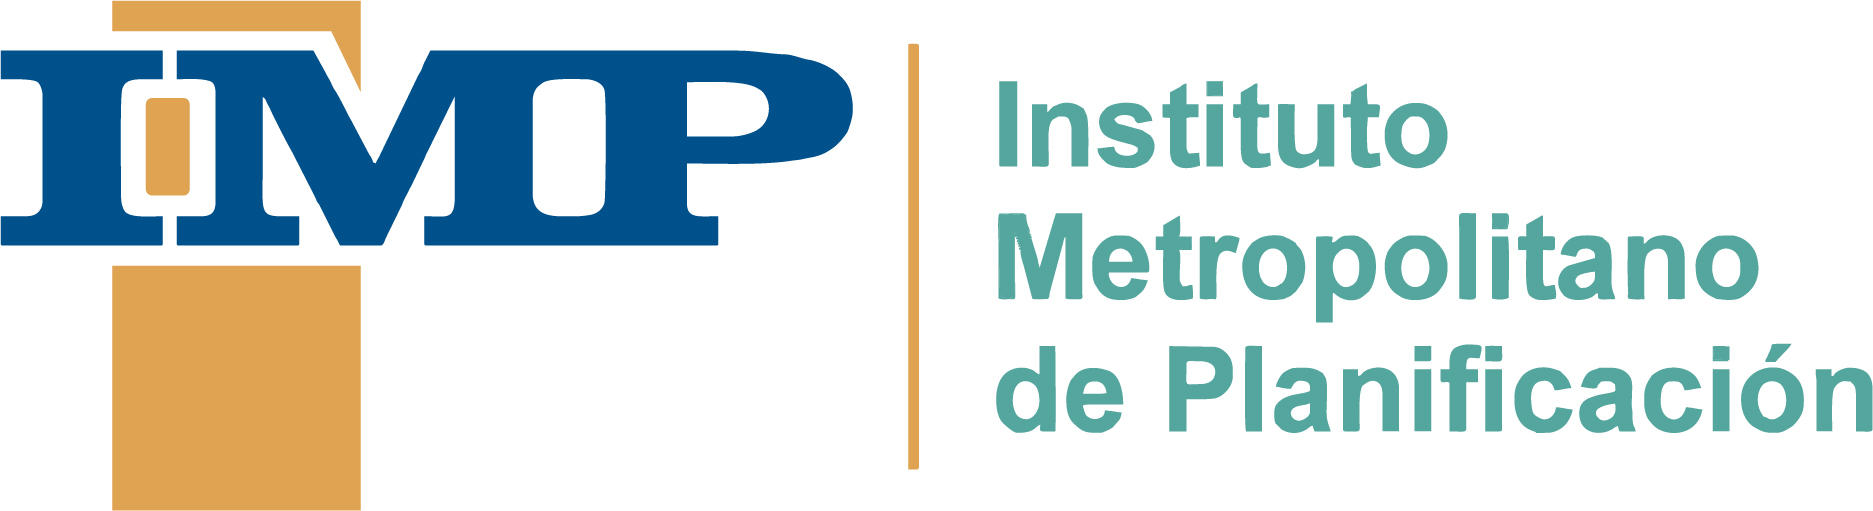 Instituto Metropolitano de Planificación